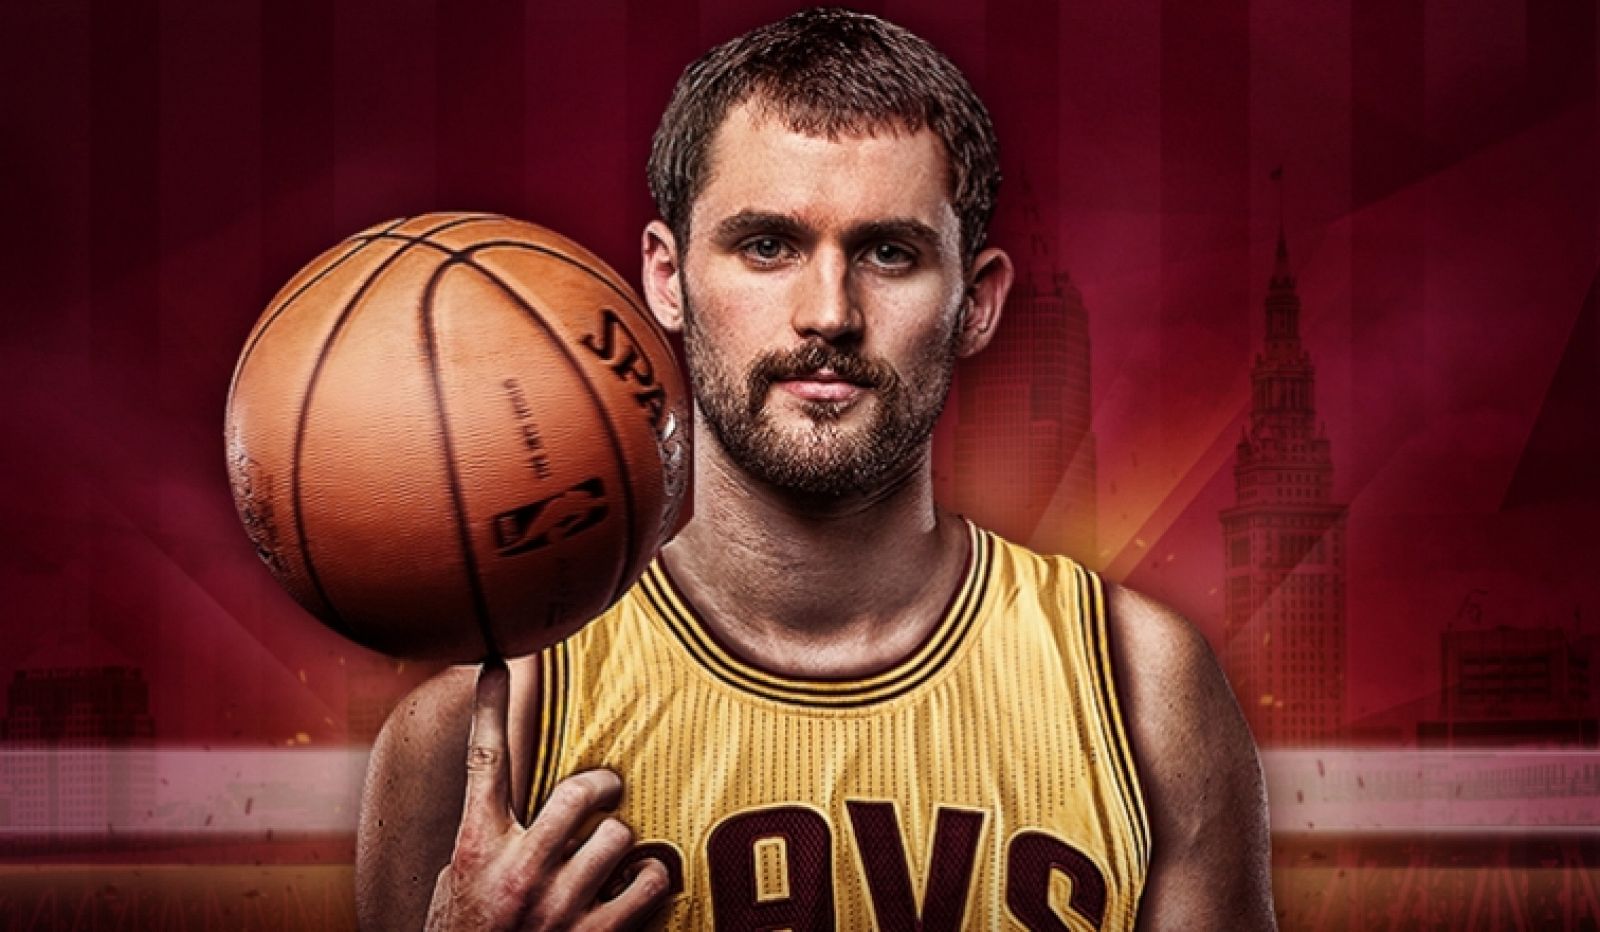 Imagen extraída de la web oficial de Cleveland Cavaliers con la que el equipo ha anunciado el fichaje de Kevin Love